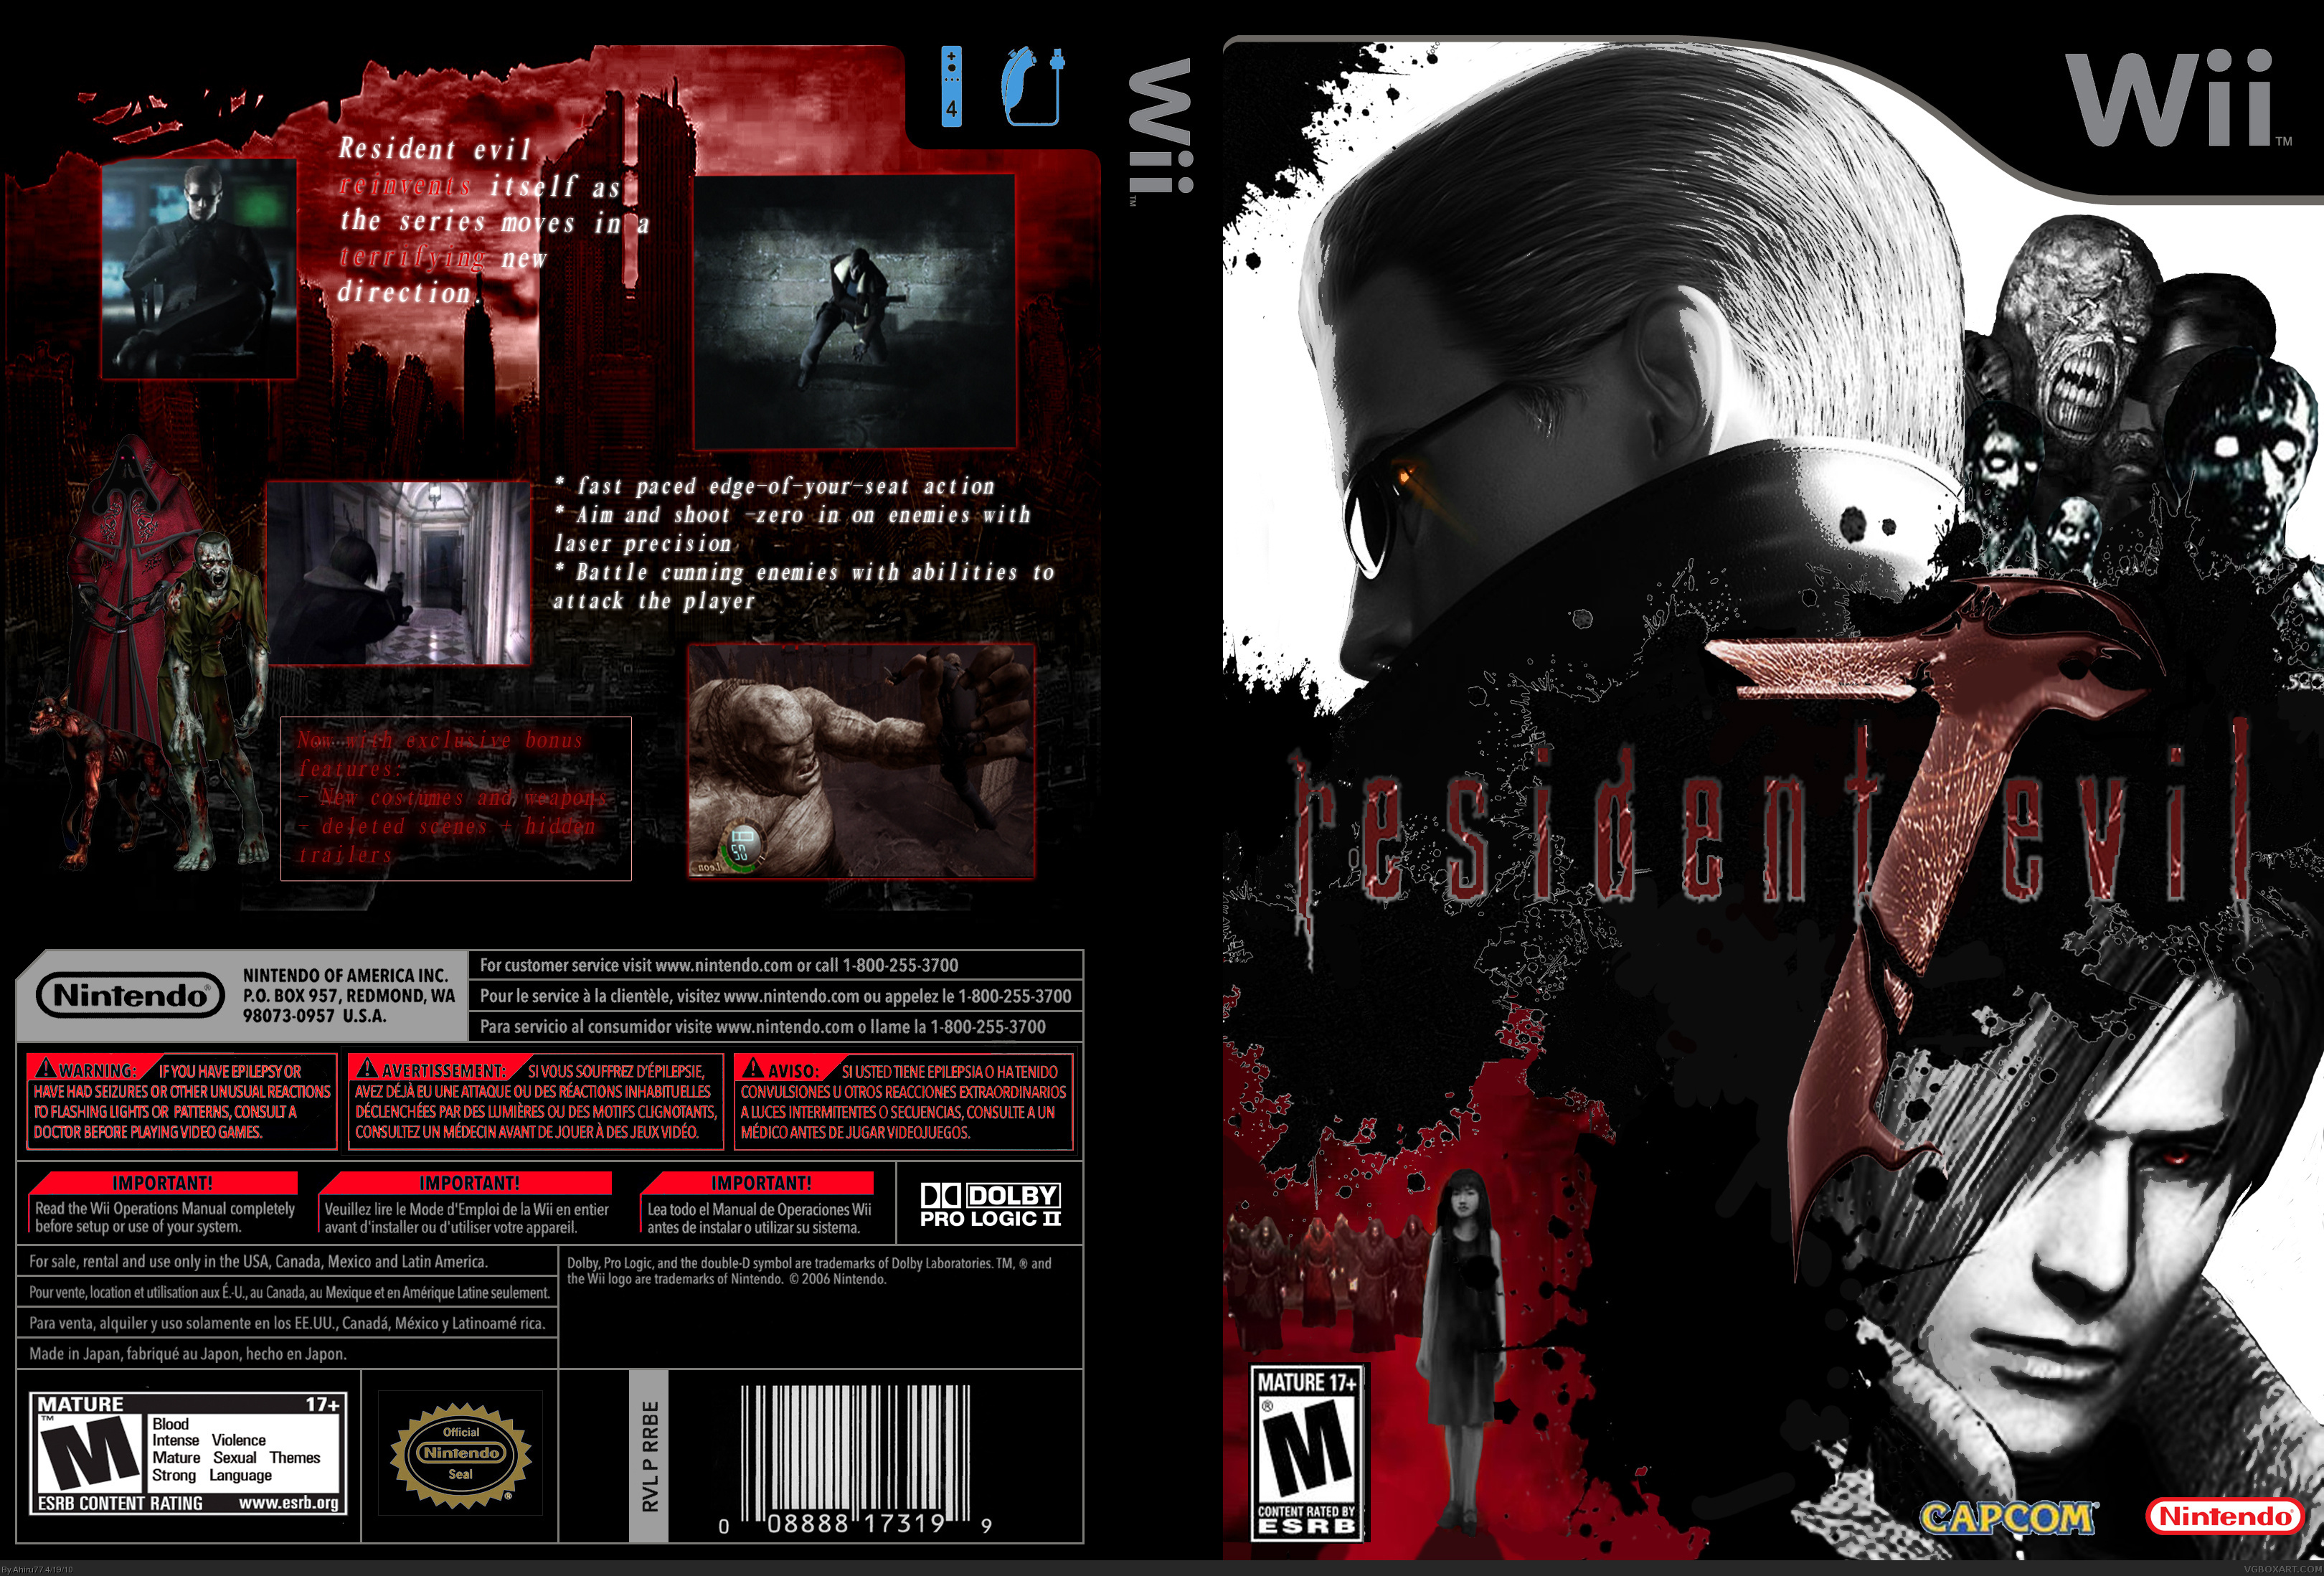 Resident Evil 7 box cover